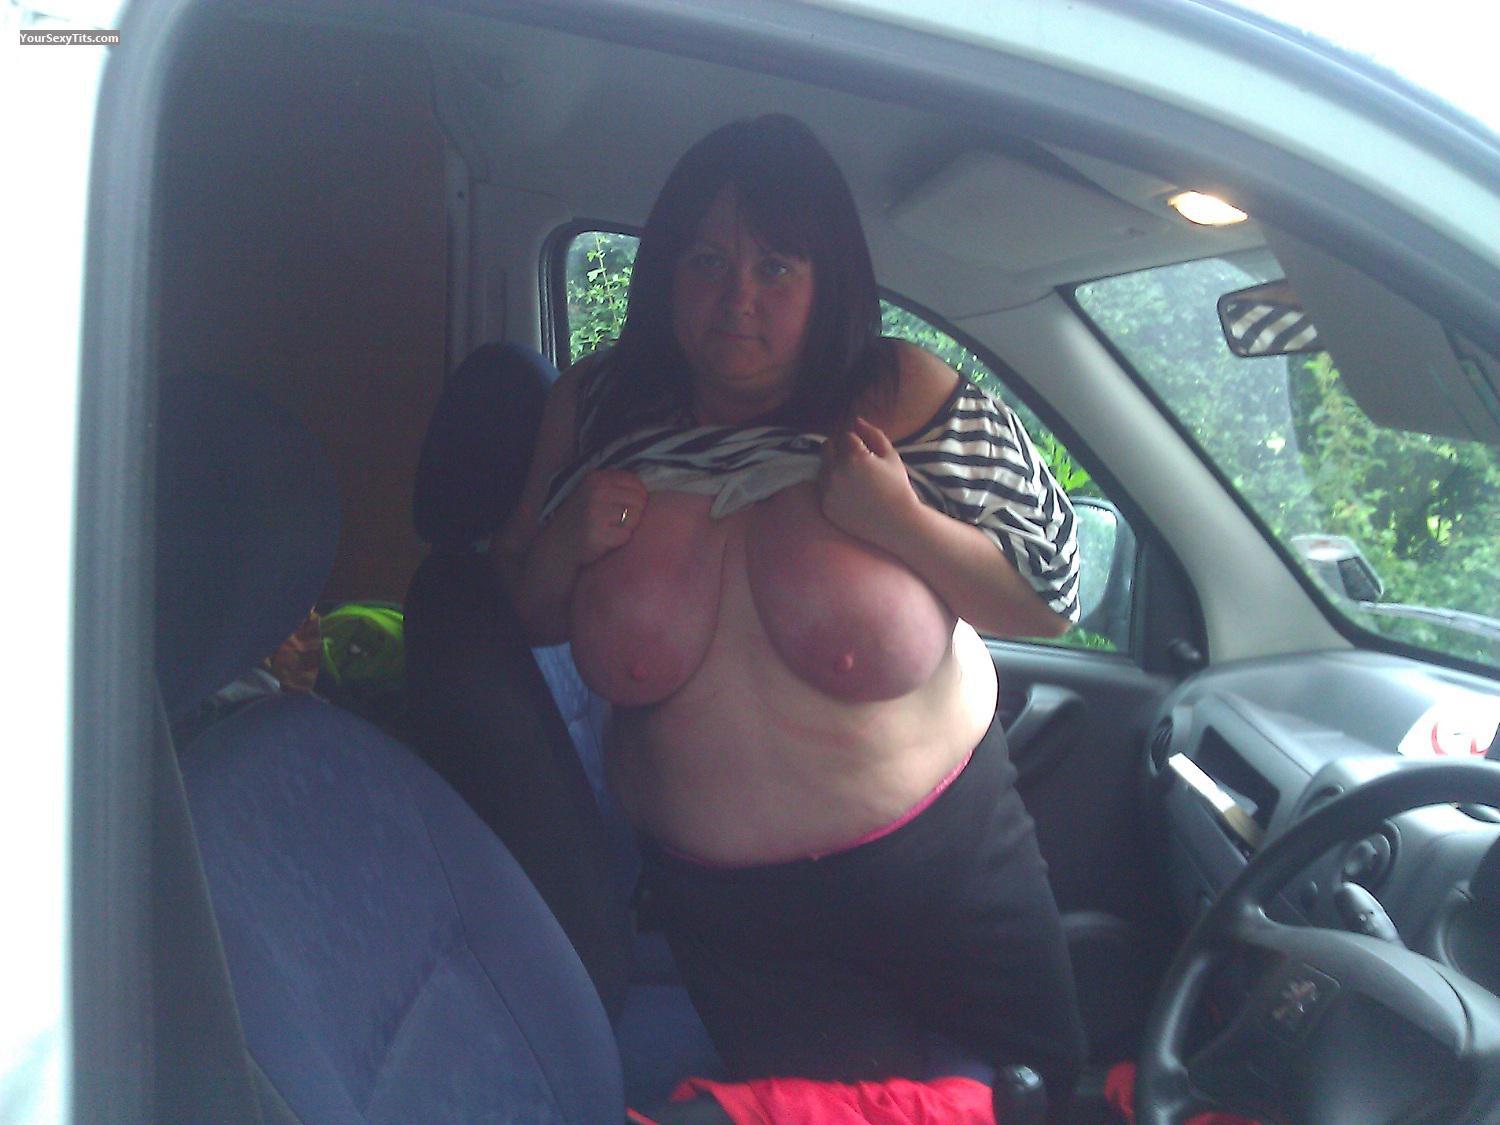 Tit Flash: My Very Big Tits (Selfie) - Topless Nicknack from United Kingdom